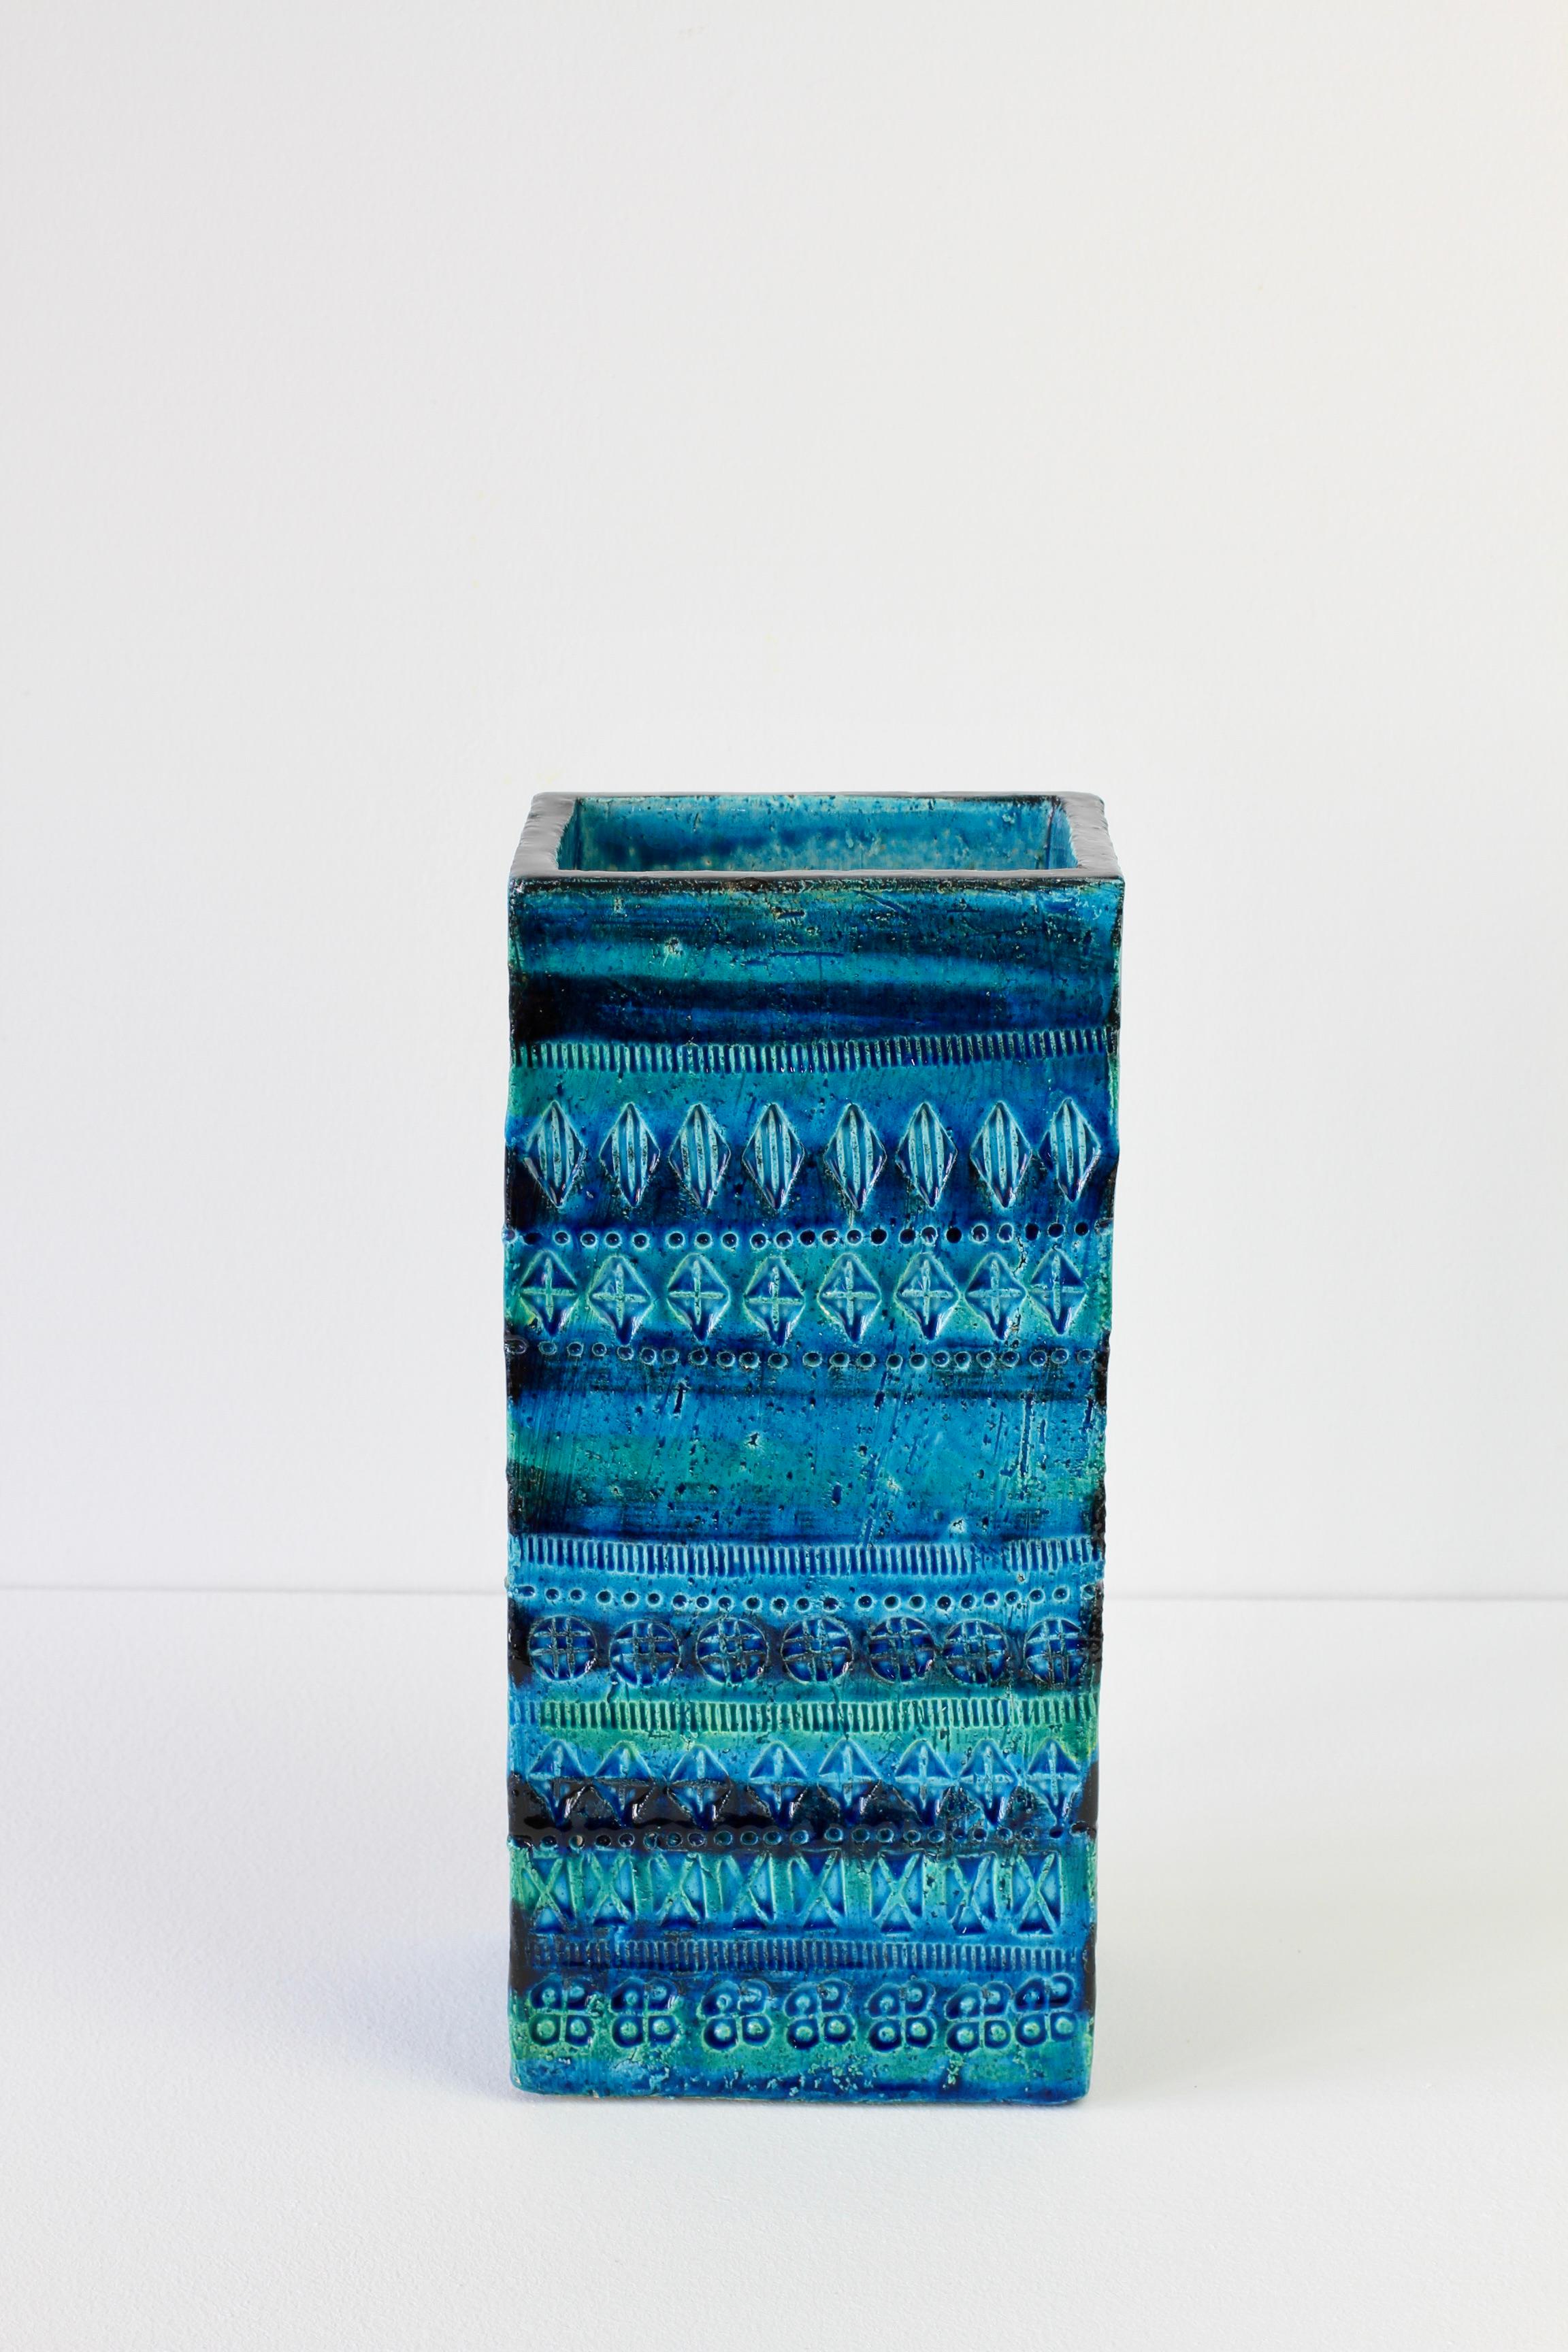 Magnifique et rare grand vase de 30 cm en relief, d'un bleu 